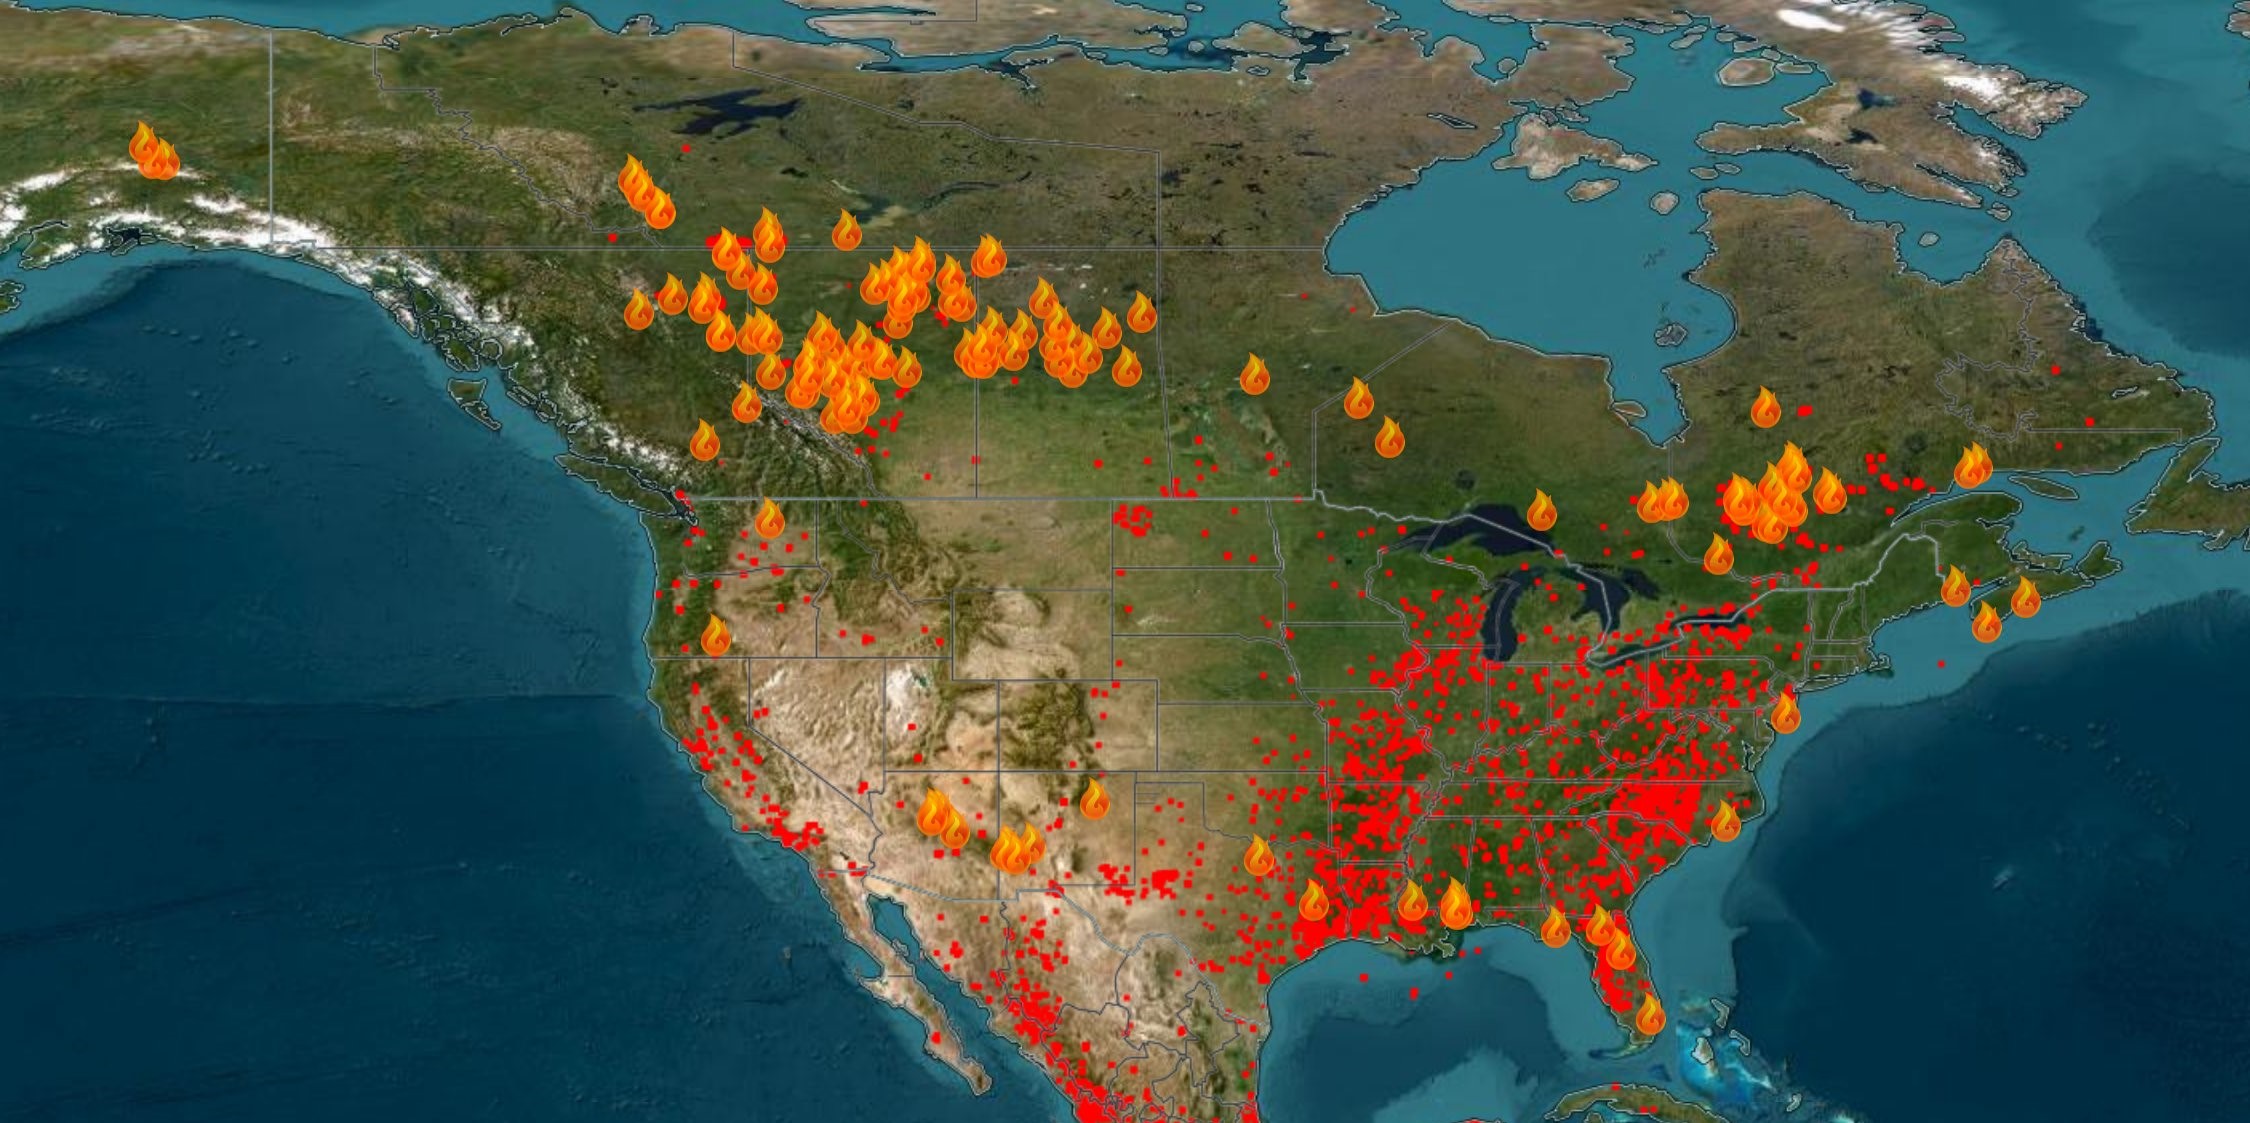 Μαίνονται οι πυρκαγιές στο Κεμπέκ – Η ατμοσφαιρική ρύπανση «πνίγει» την Ουάσινγκτον